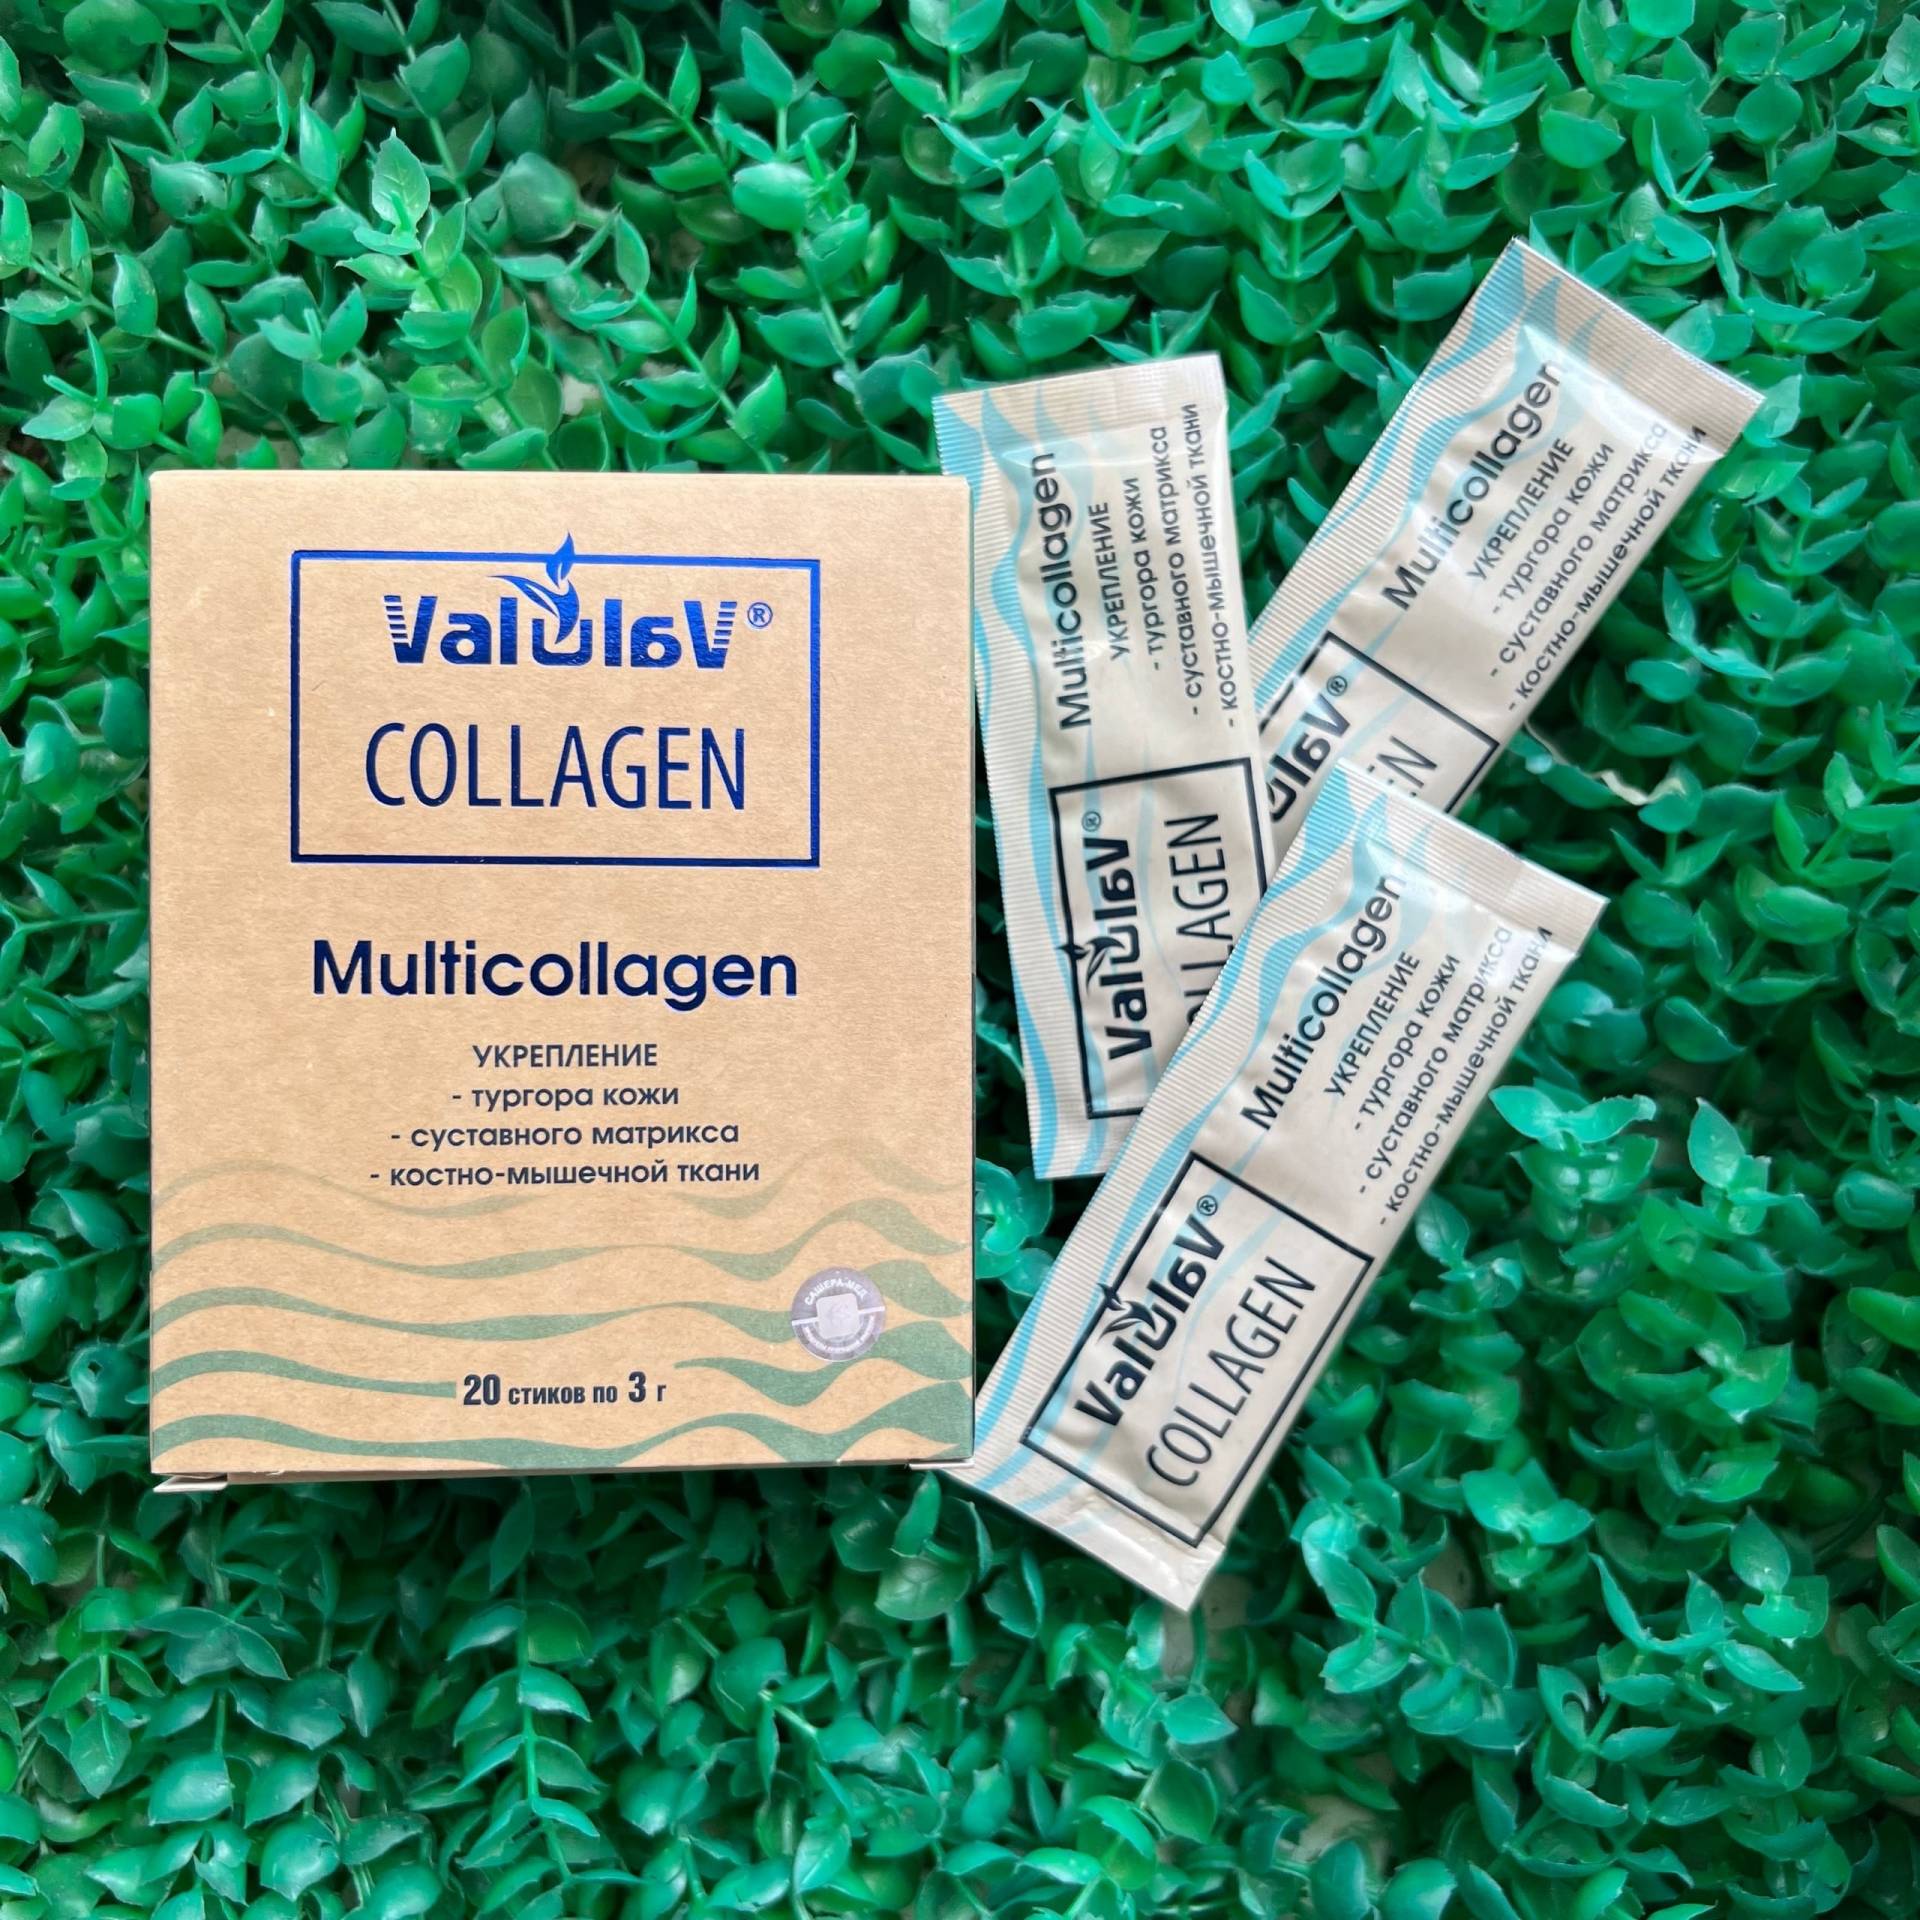 Стик collagen. Valulav Collagen Мультиколлаген, 20 стиков. Стики с коллагеном. Коллаген в стиках купить.